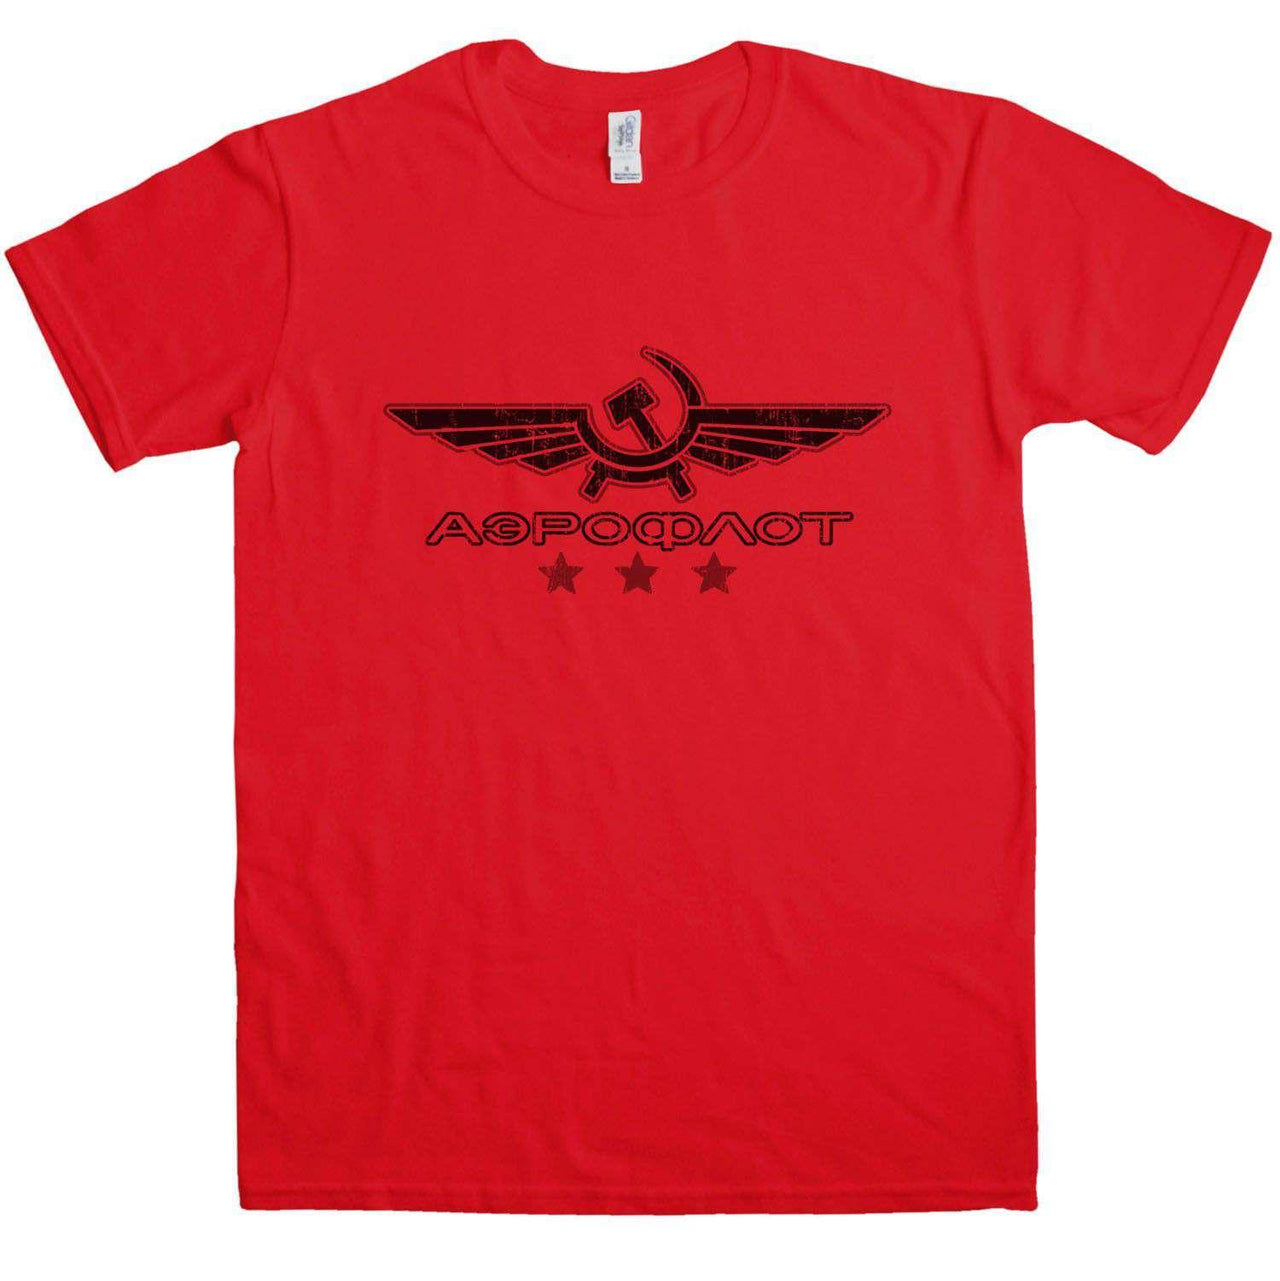 Aeroflot T-Shirt For Men 8Ball